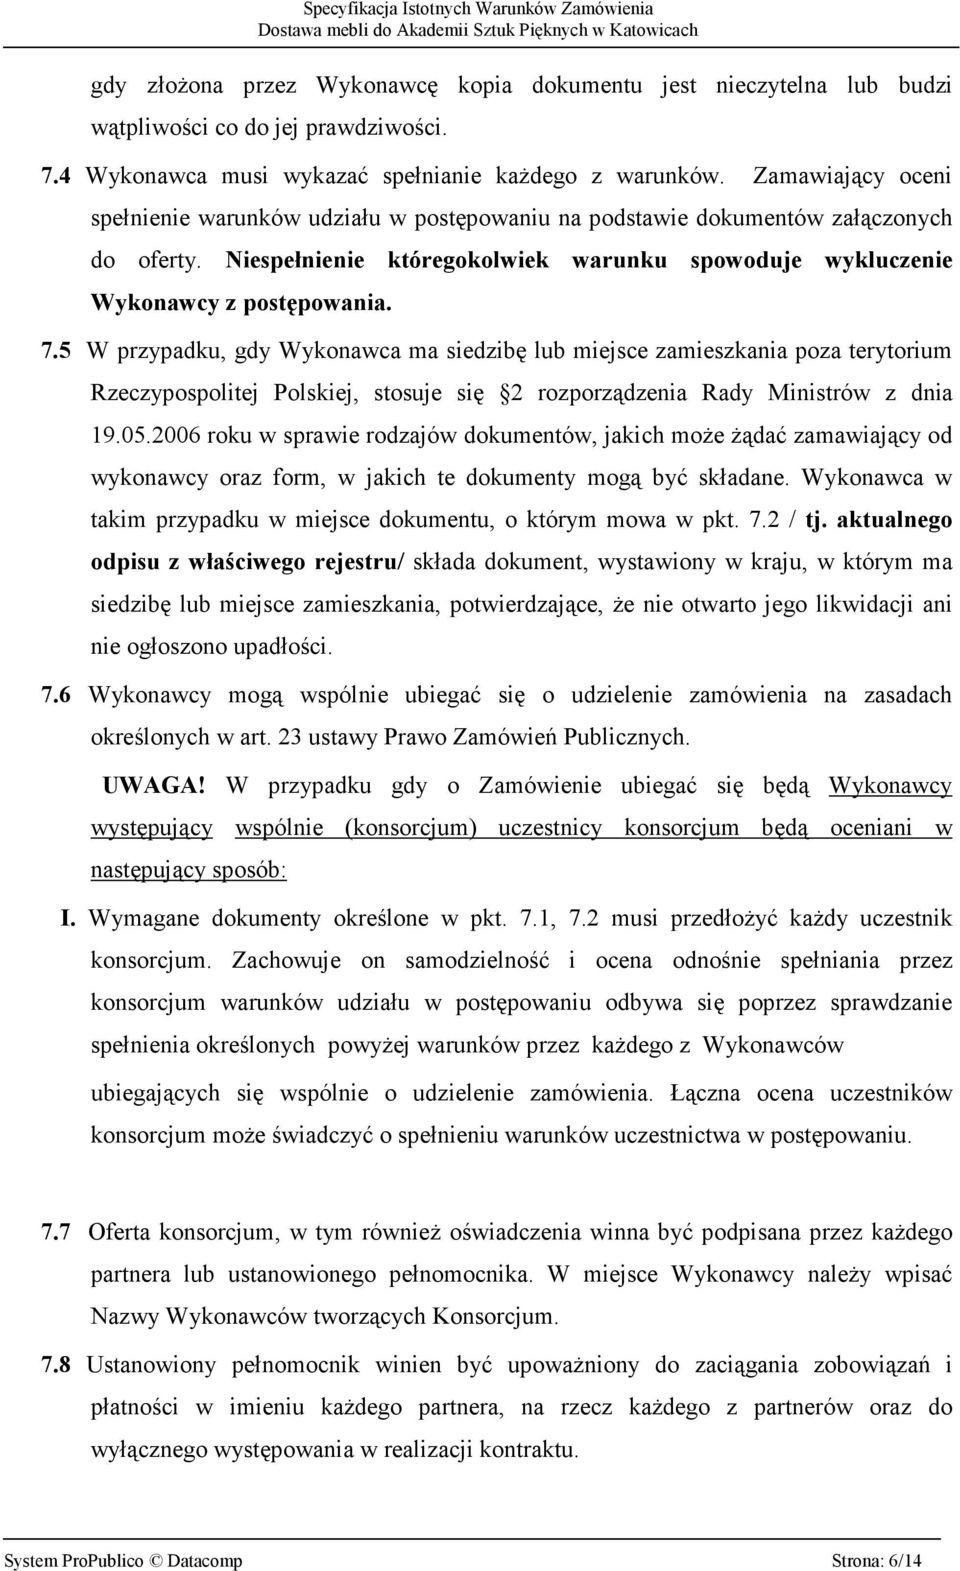 5 W przypadku, gdy Wykonawca ma siedzibę lub miejsce zamieszkania poza terytorium Rzeczypospolitej Polskiej, stosuje się 2 rozporządzenia Rady Ministrów z dnia 19.05.